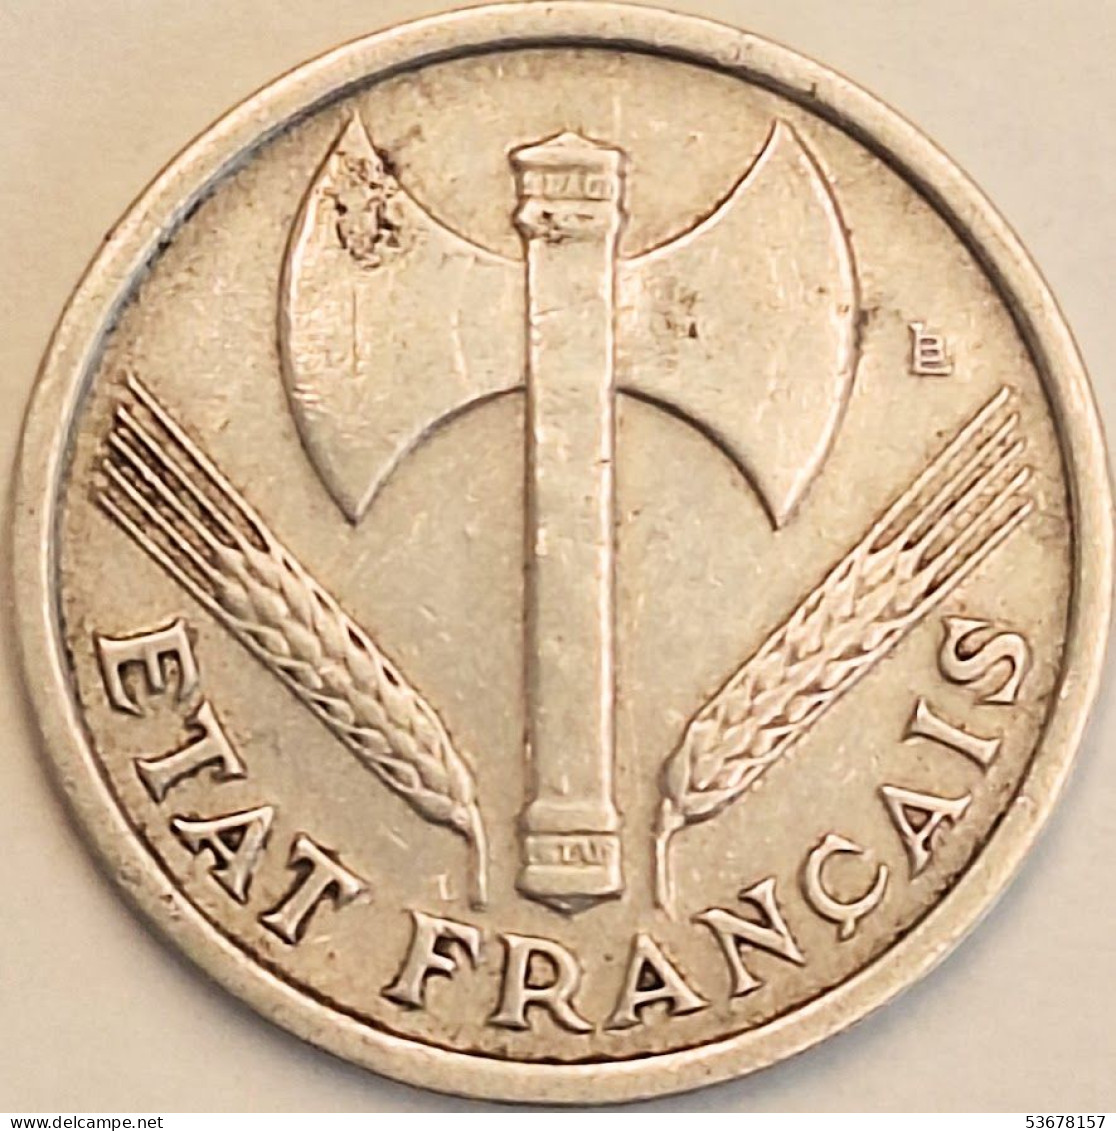 France - Franc 1942, KM# 902.1 (#4090) - 1 Franc